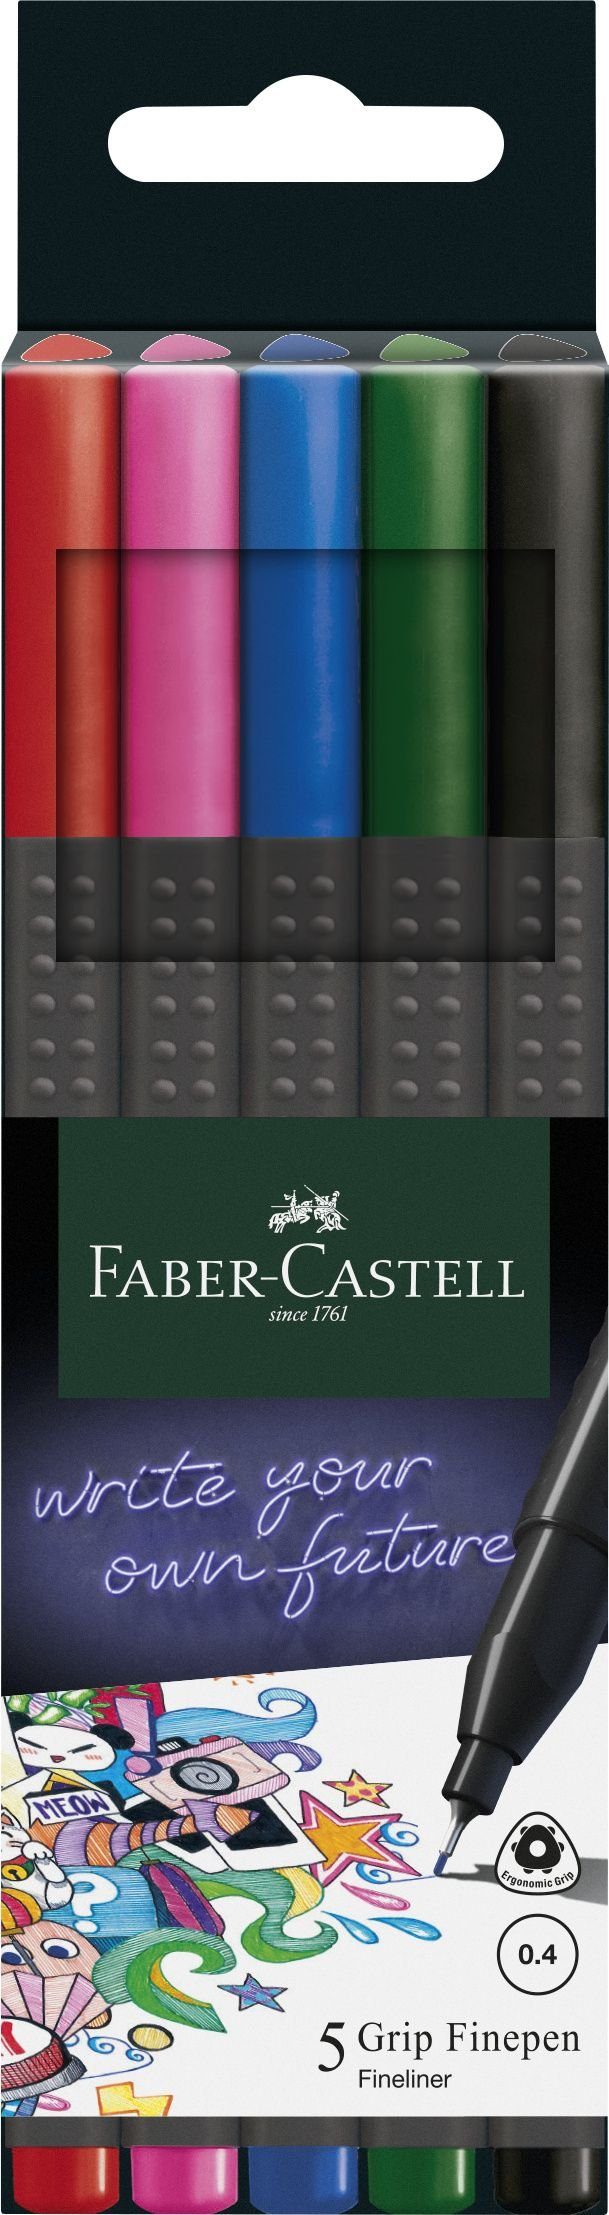 Faber-Castell Fineliner FABER-CASTELL Fineliner GRIP FINEPEN, 5er Kartonetui | Fineliner